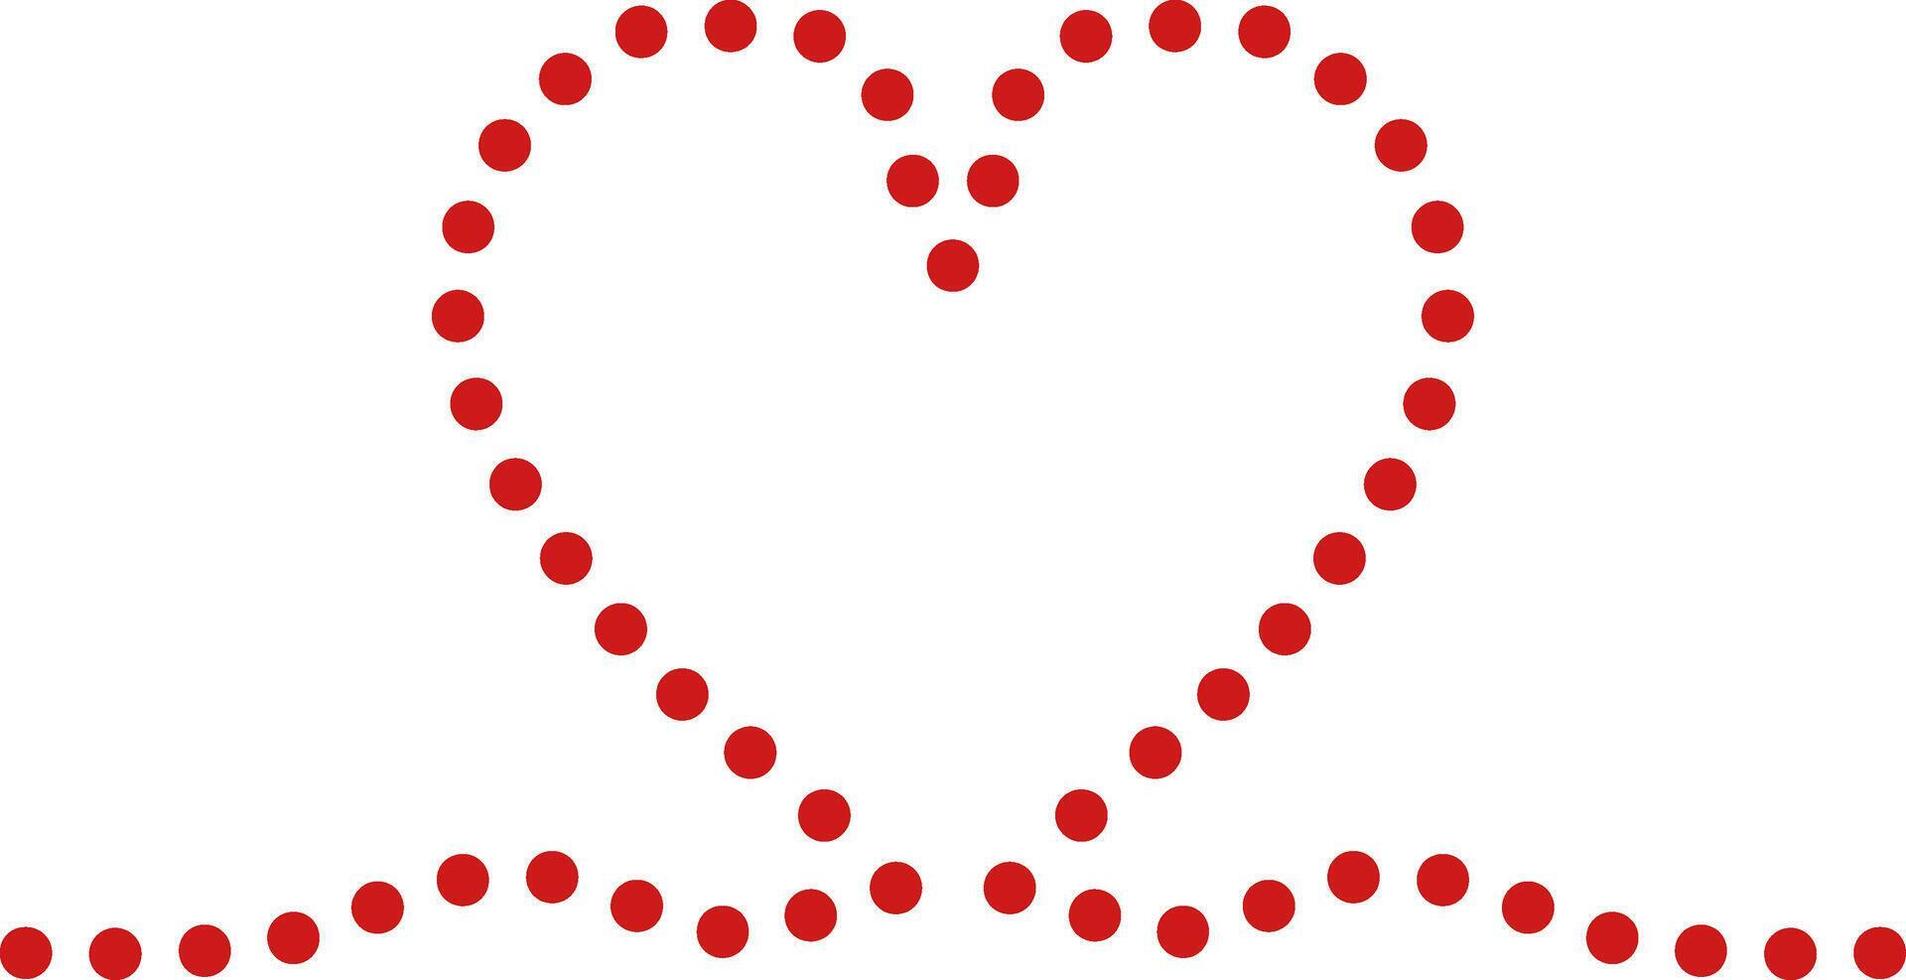 Herz gestalten gemacht von Punkte auf ein Weiß Hintergrund. Vektor Illustration. Liebe, Romantik Herz